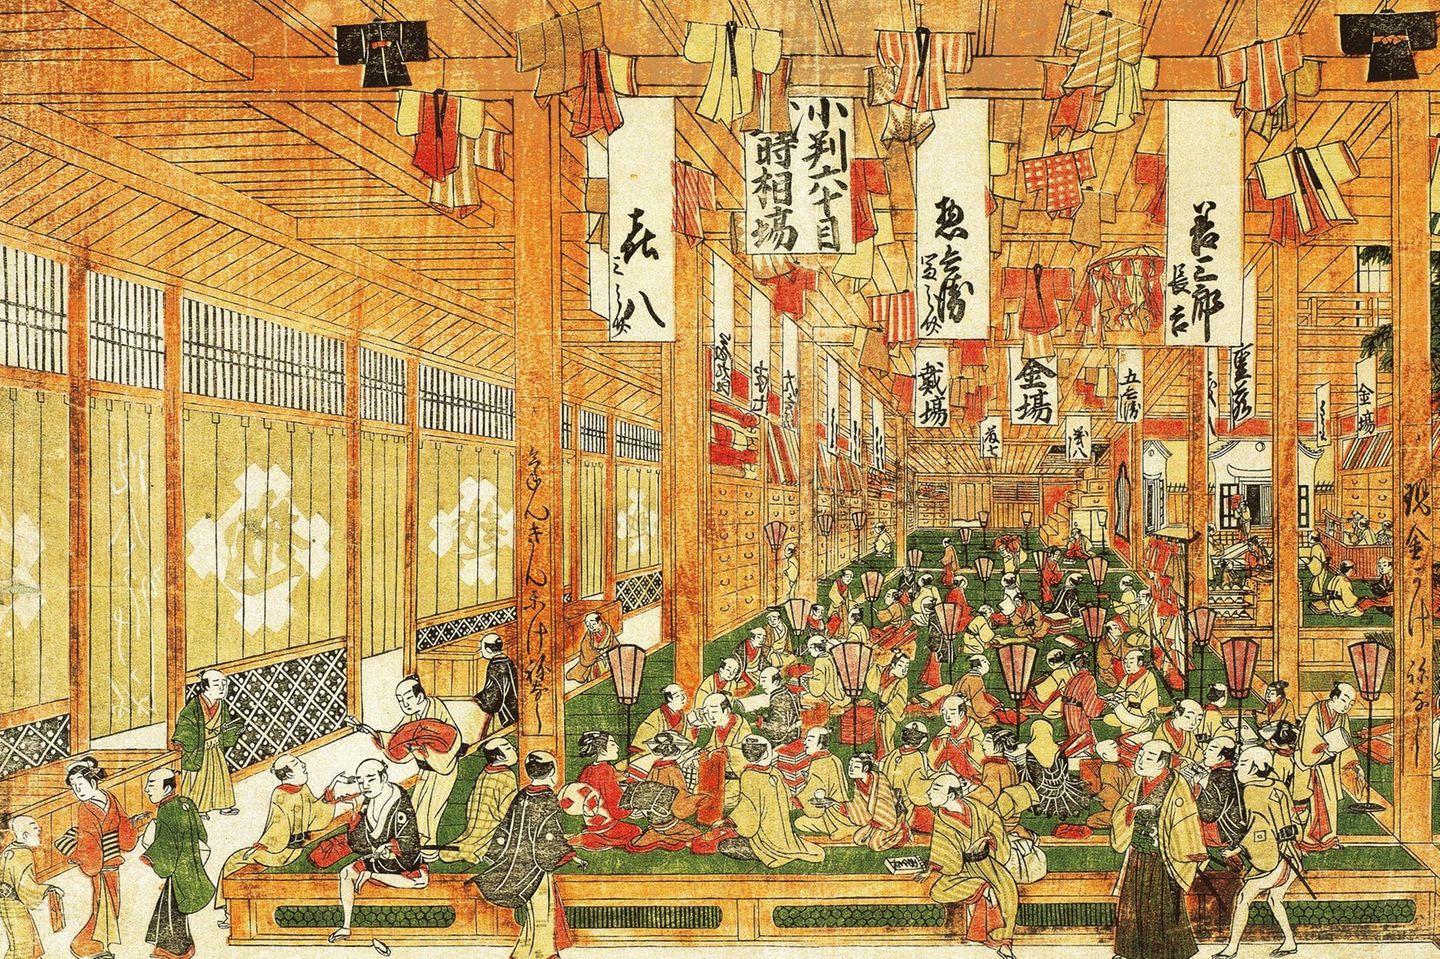 In den Hallen des großen Tuch- und Kleidungsgeschäfts Mitsui kümmern sich Dutzende Verkäufer um die Kundschaft. Fertig geschneiderte Kimonos hängen als Musterstücke von der Decke. Nicht wenige Geschäftsleute machen in Edo ein Vermögen. In der offiziellen Hierarchie der Gesellschaft stehen sie jedoch ganz unten